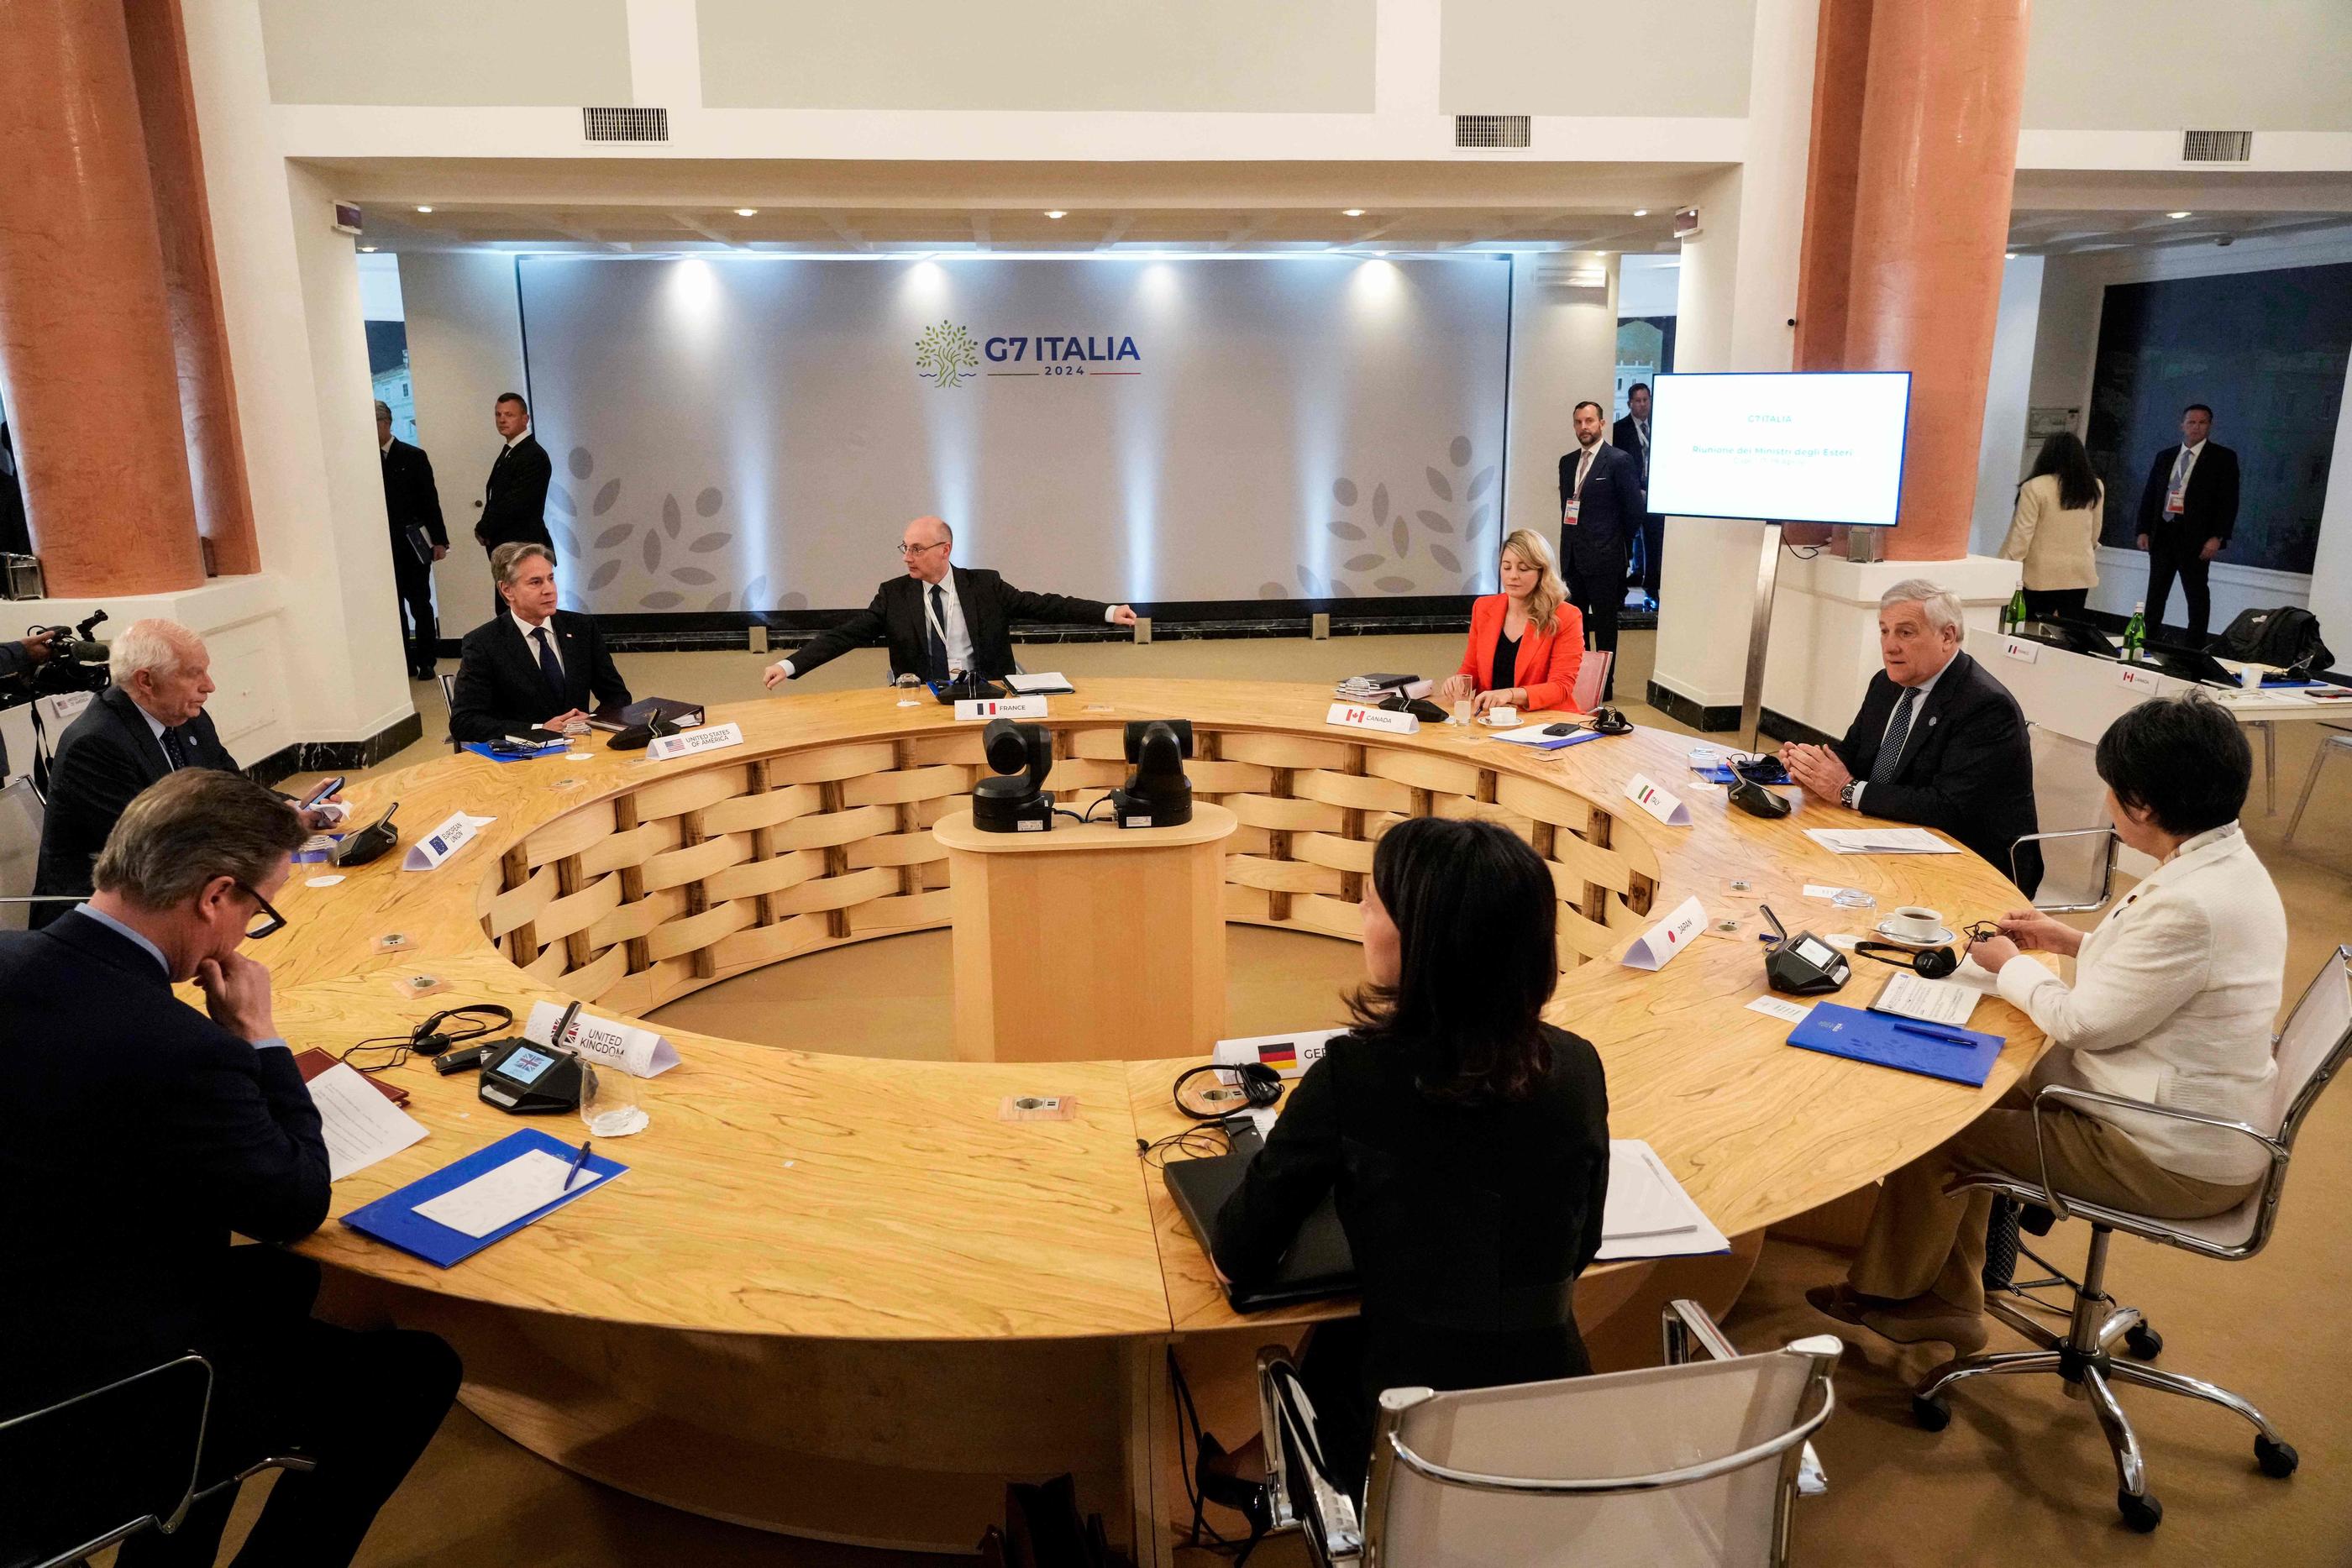 Les membres du G7 appellent à éviter une nouvelle escalade au Moyen-Orient. AFP / Gregorio Borgia